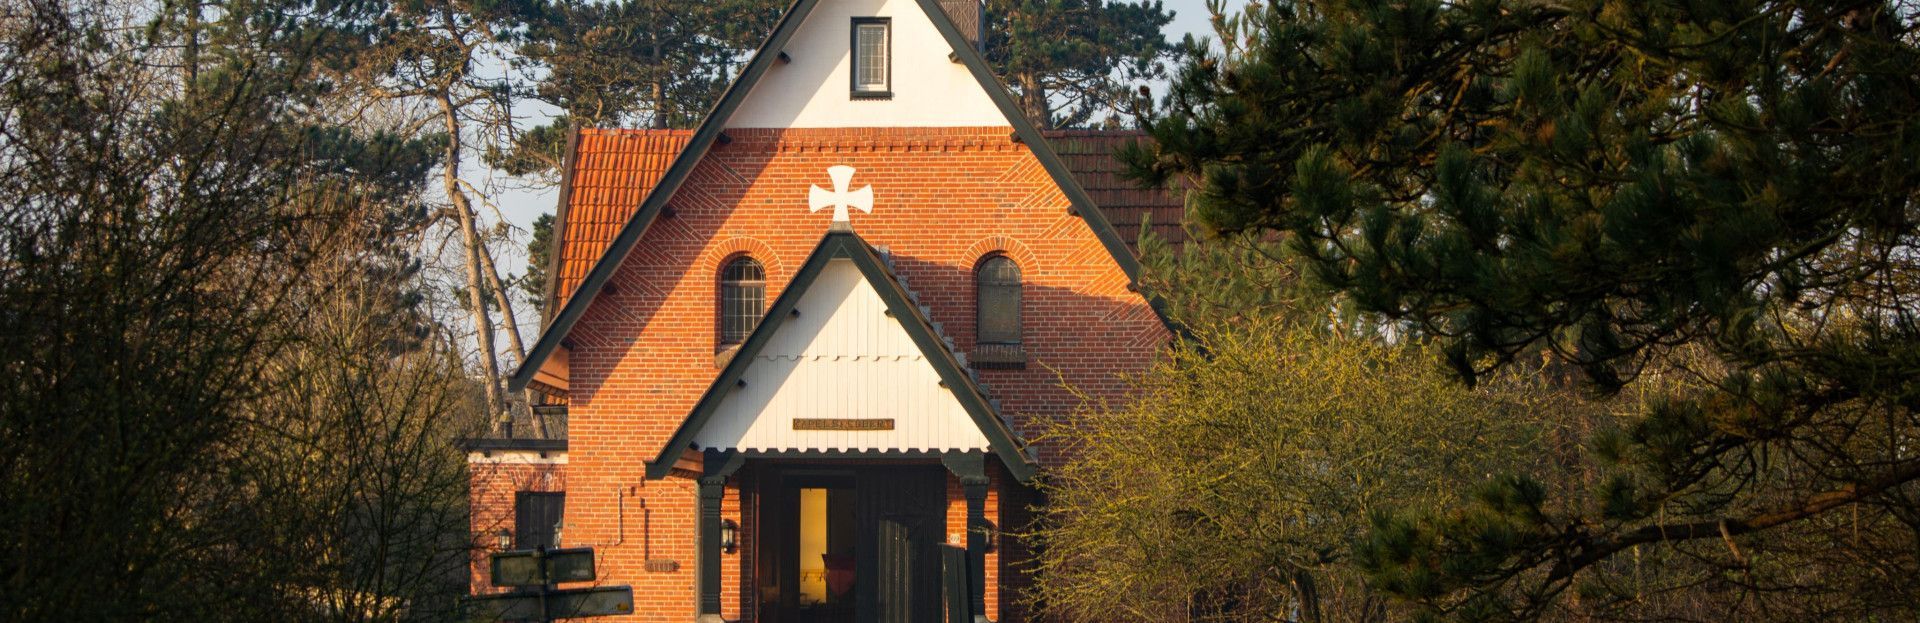 RK kapel Schiermonnikoog